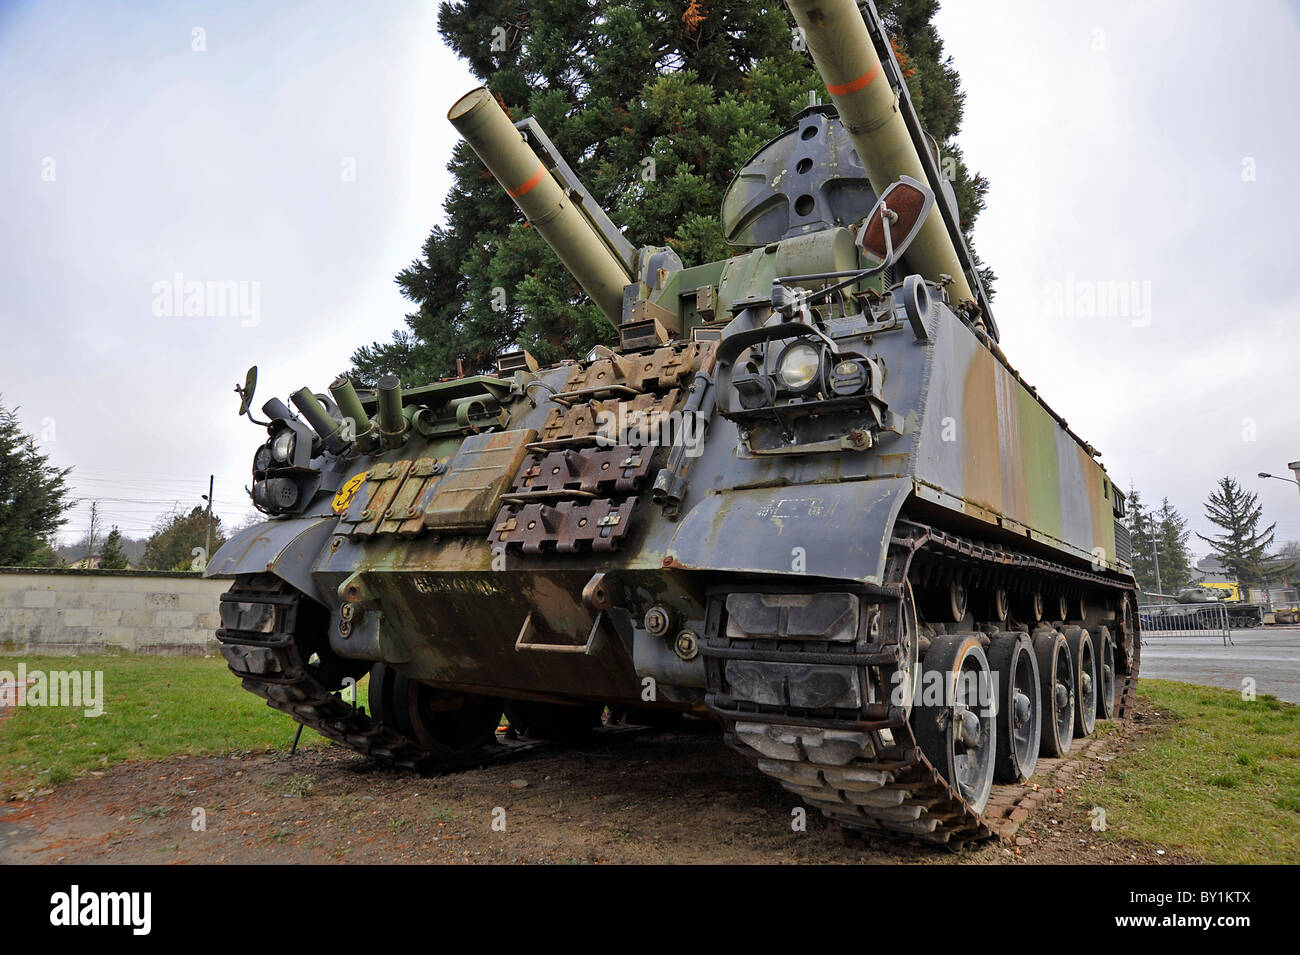 Outdoor tank display at Saumur tank museum France Stock Photo